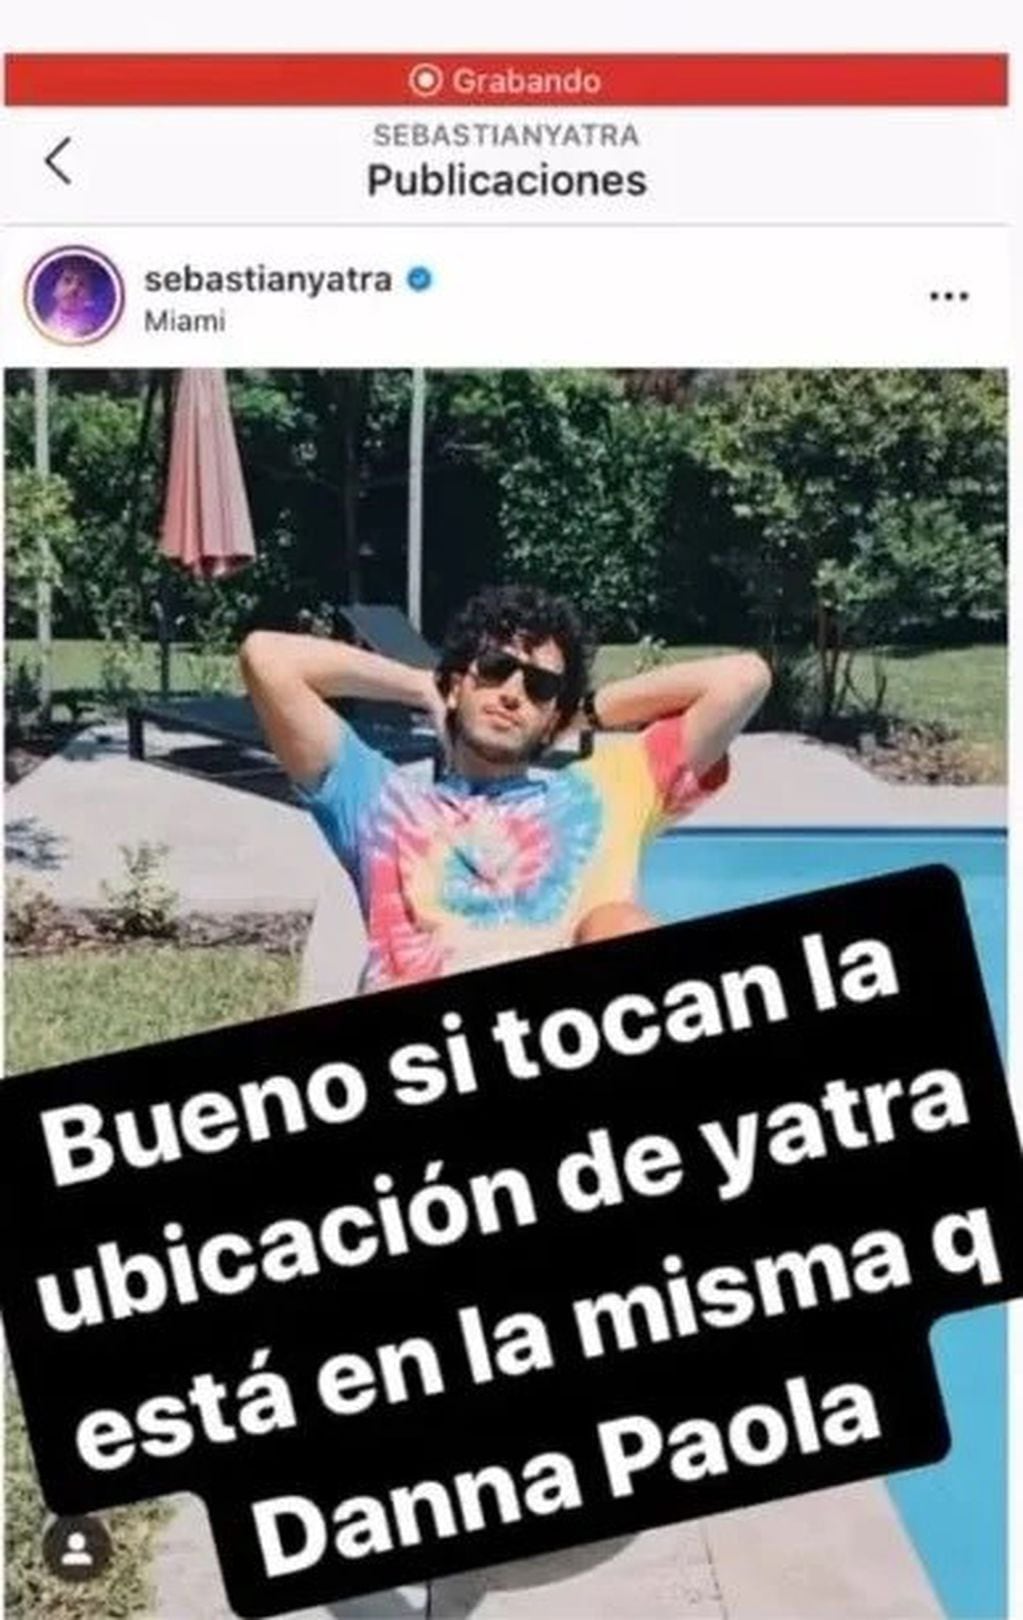 Rumores de romance entre Sebastián Yatra y Danna Paola (Instagram)